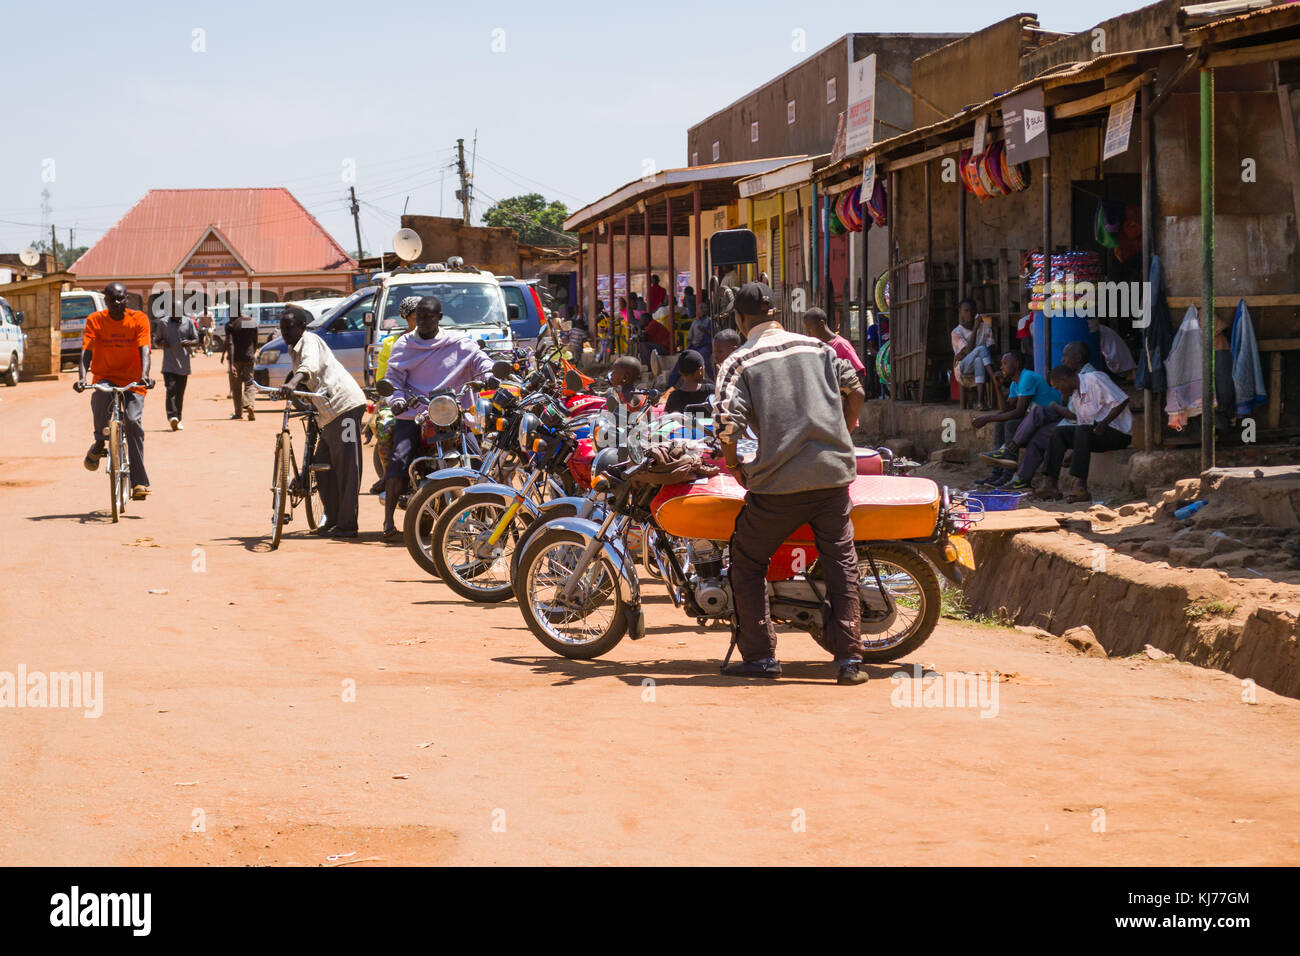 Plusieurs motos taxis boda boda alignés en stationnement sur une route poussiéreuse des personnes qui se promènent dans une ville, Busia, Ouganda, Afrique de l'Est Banque D'Images